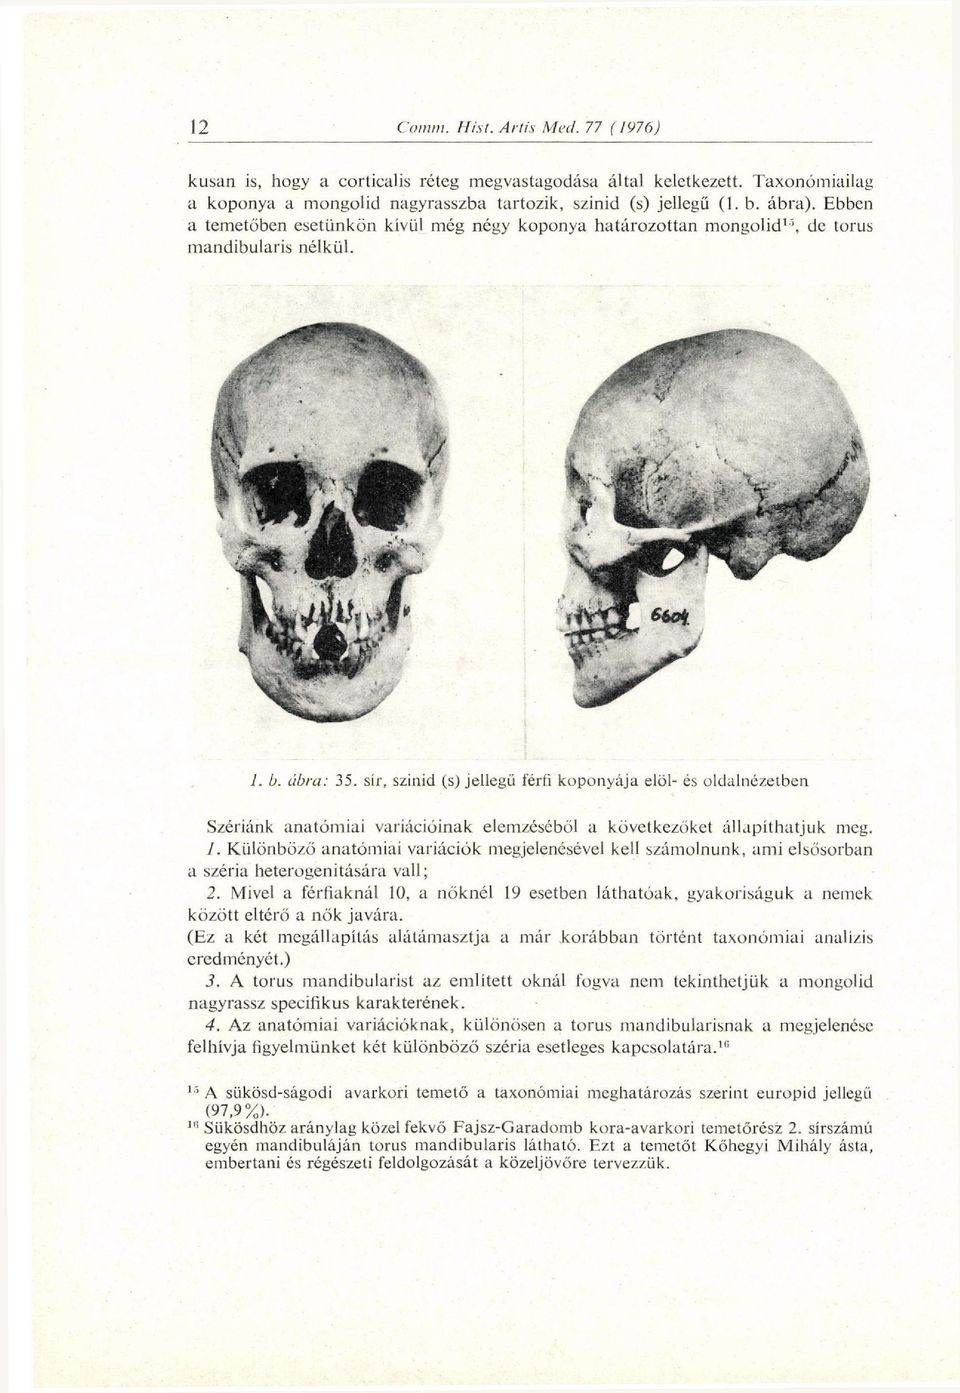 sír, szinid (s) jellegű férfi koponyája elöl- és oldalnézetben Szériánk anatómiai variációinak elemzéséből a következőket állapíthatjuk meg. 1.